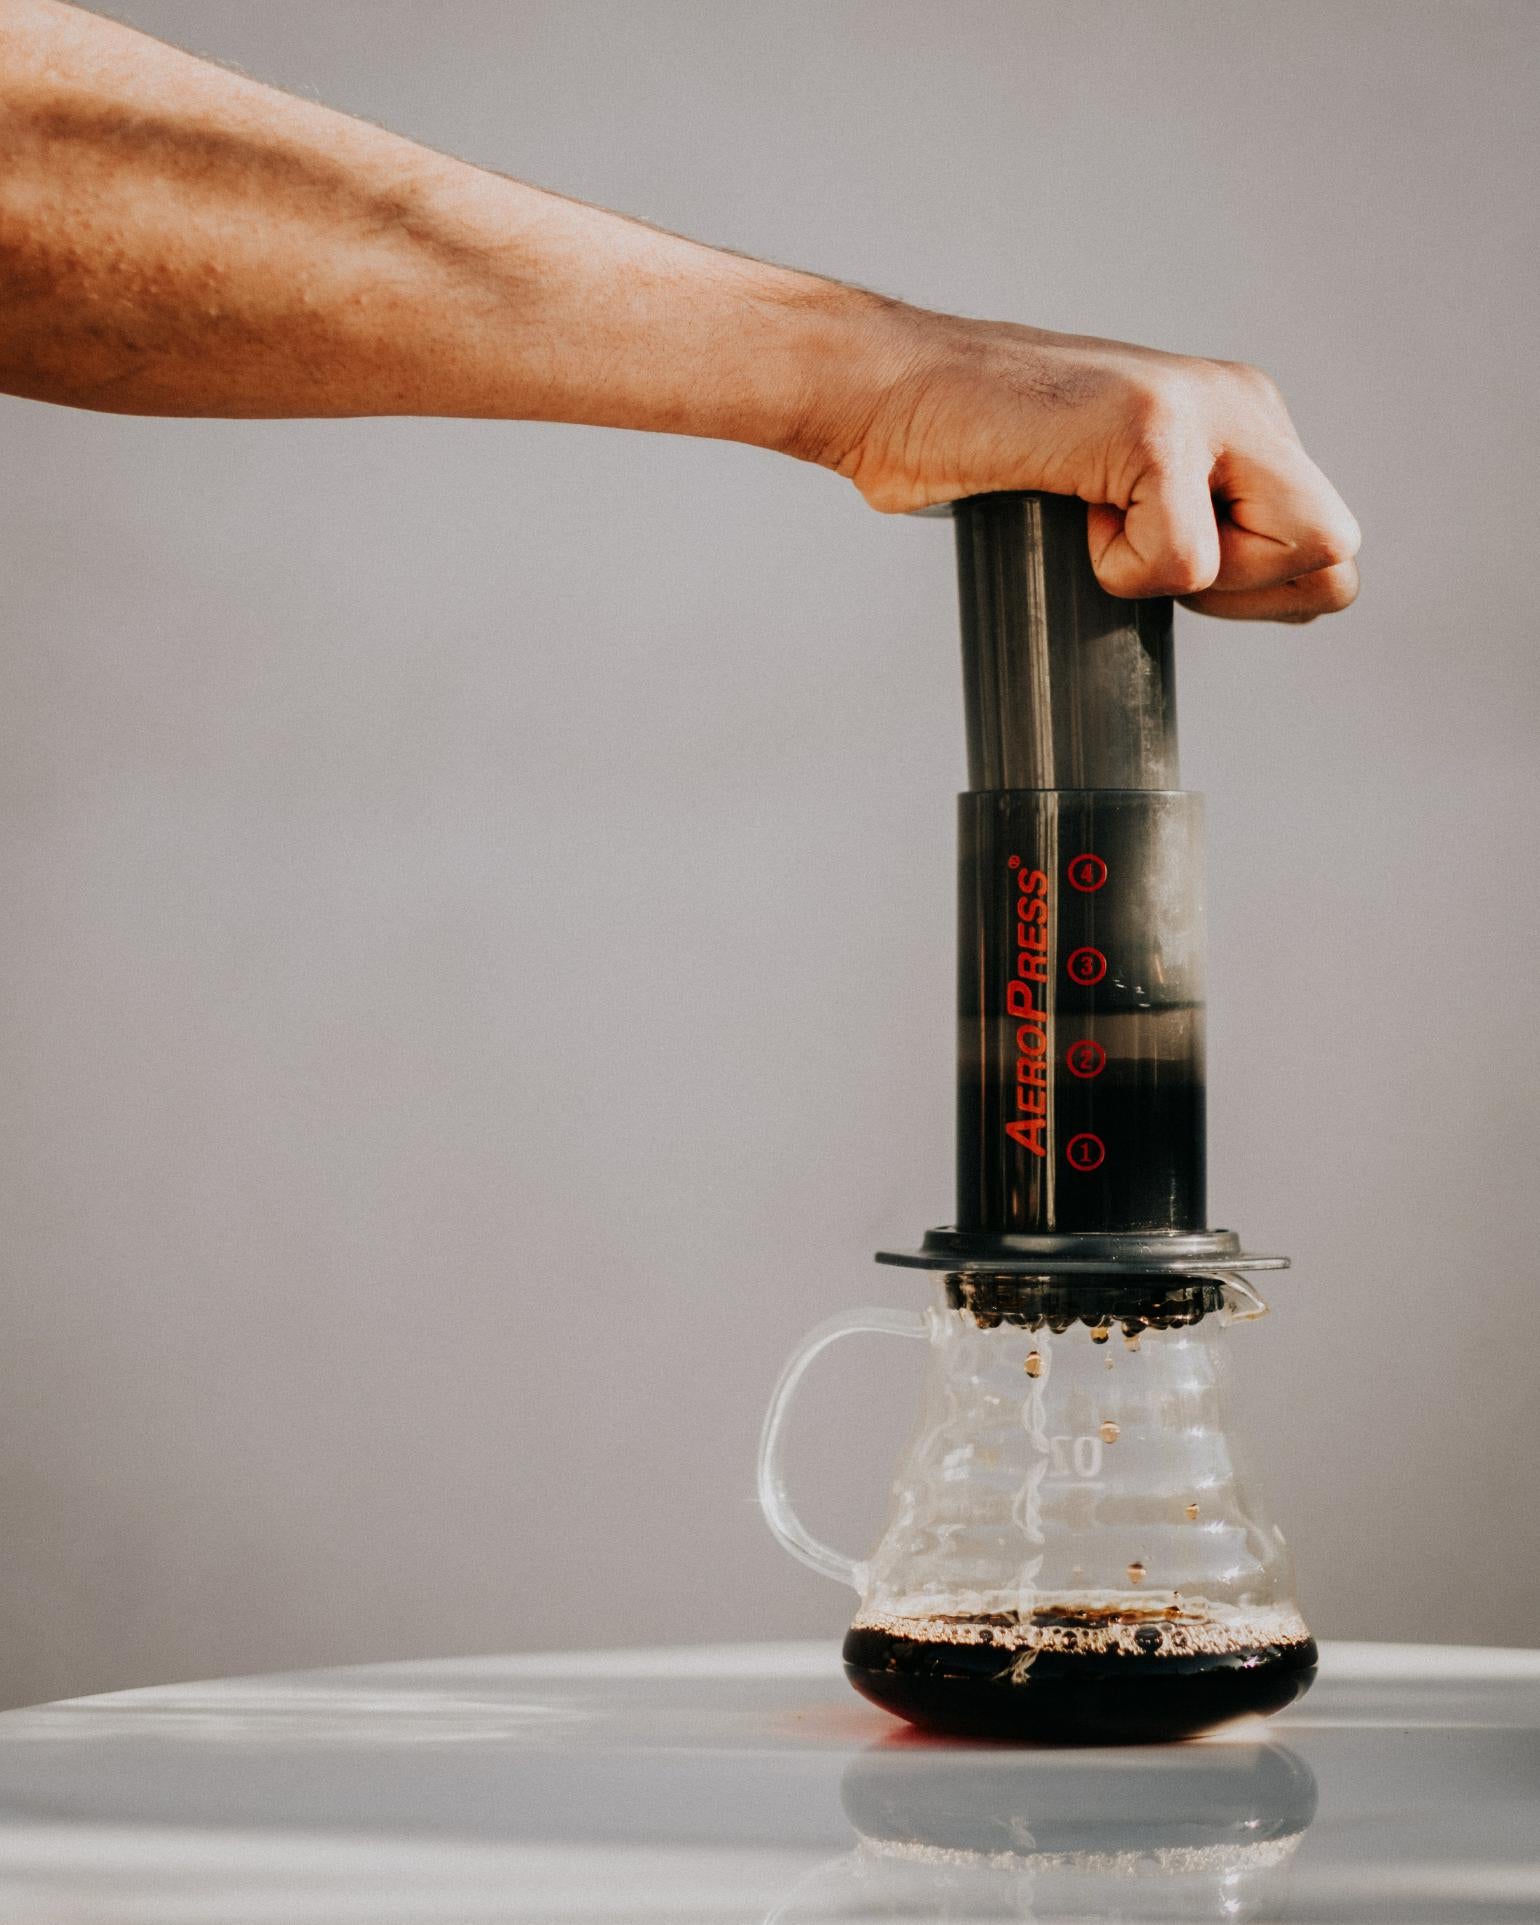 Aero Press, die perfekte Methode für die Zubereitung von erstklassigem Kaffee zu Hause oder unterwegs - entdecke die Vielseitigkeit und den Geschmack der Aero Press in unserer Kaffeerösterei